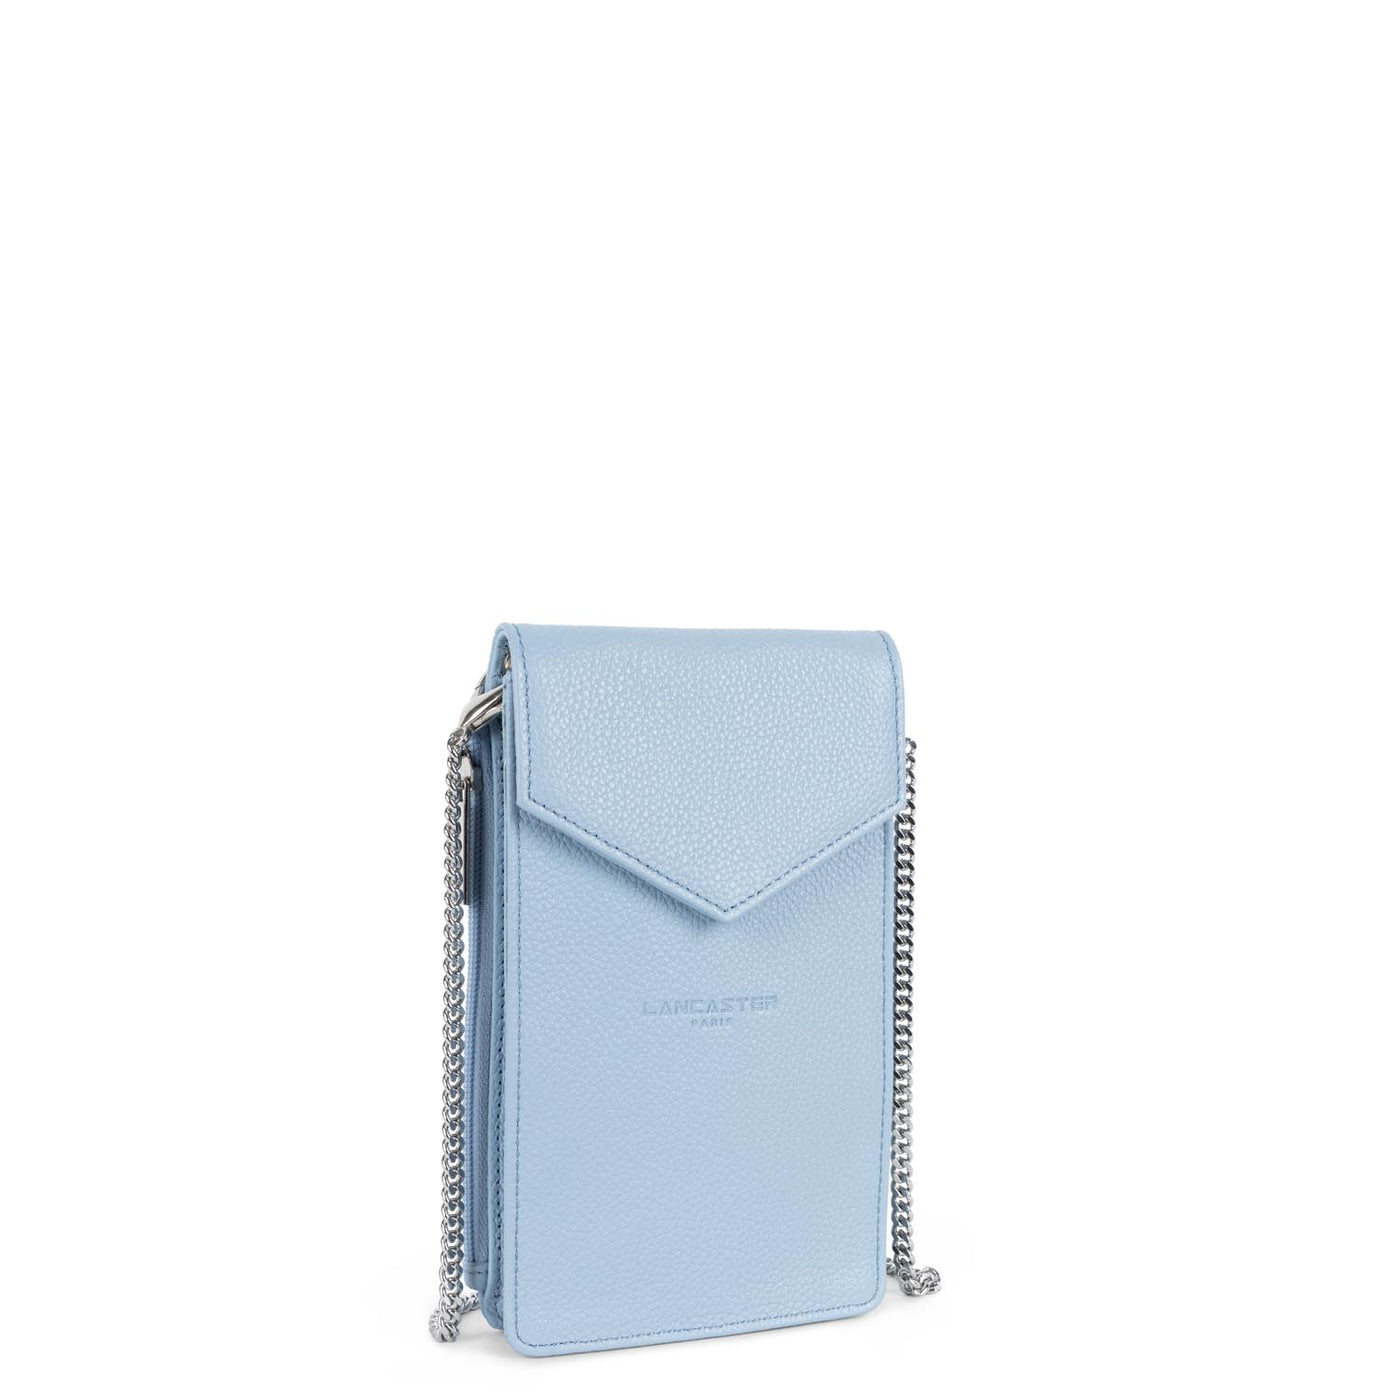 smartphone holder - foulonné pm #couleur_bleu-ciel